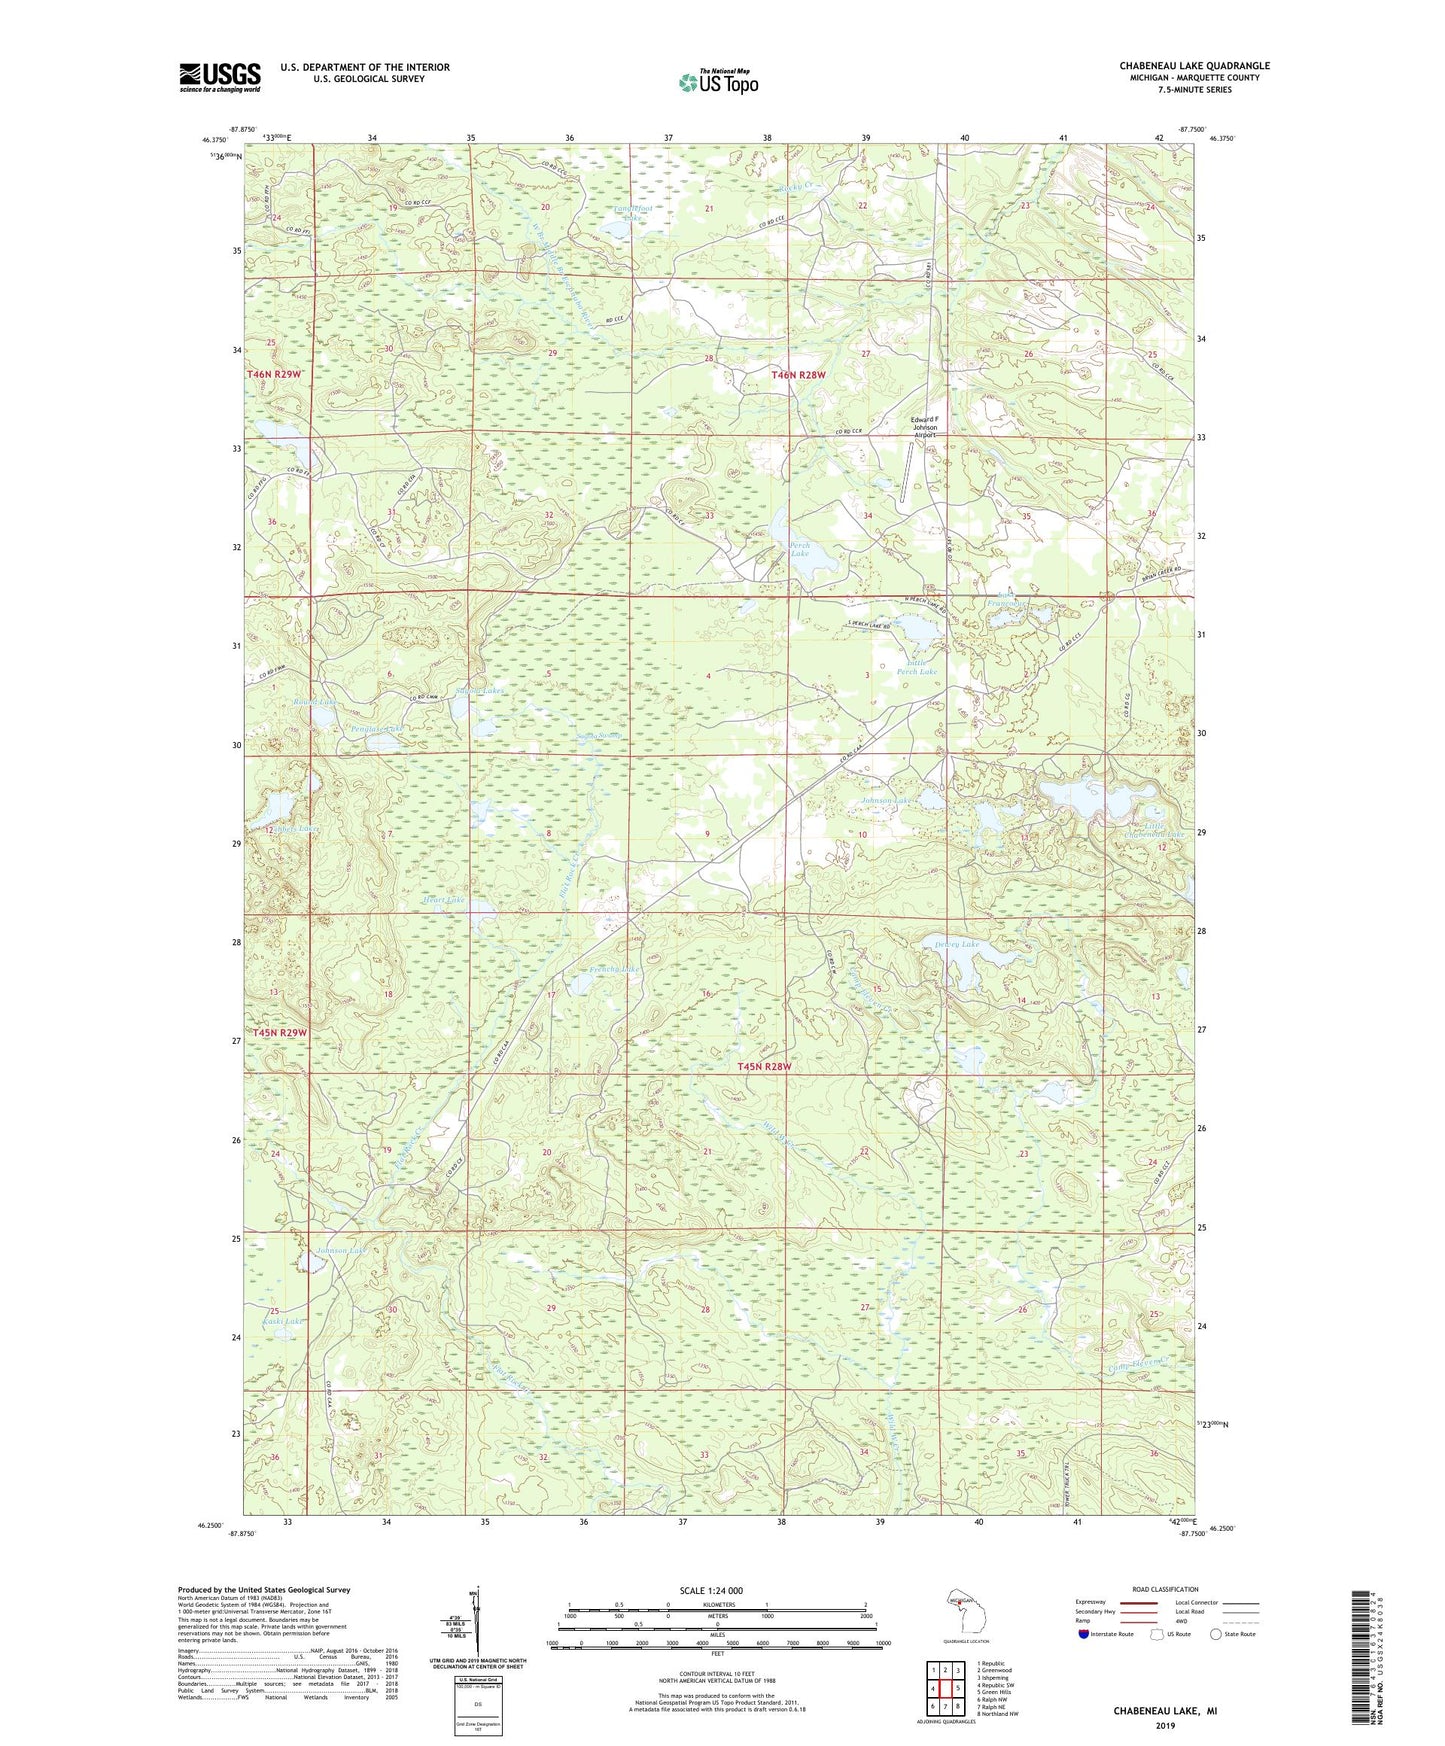 Chabeneau Lake Michigan US Topo Map Image